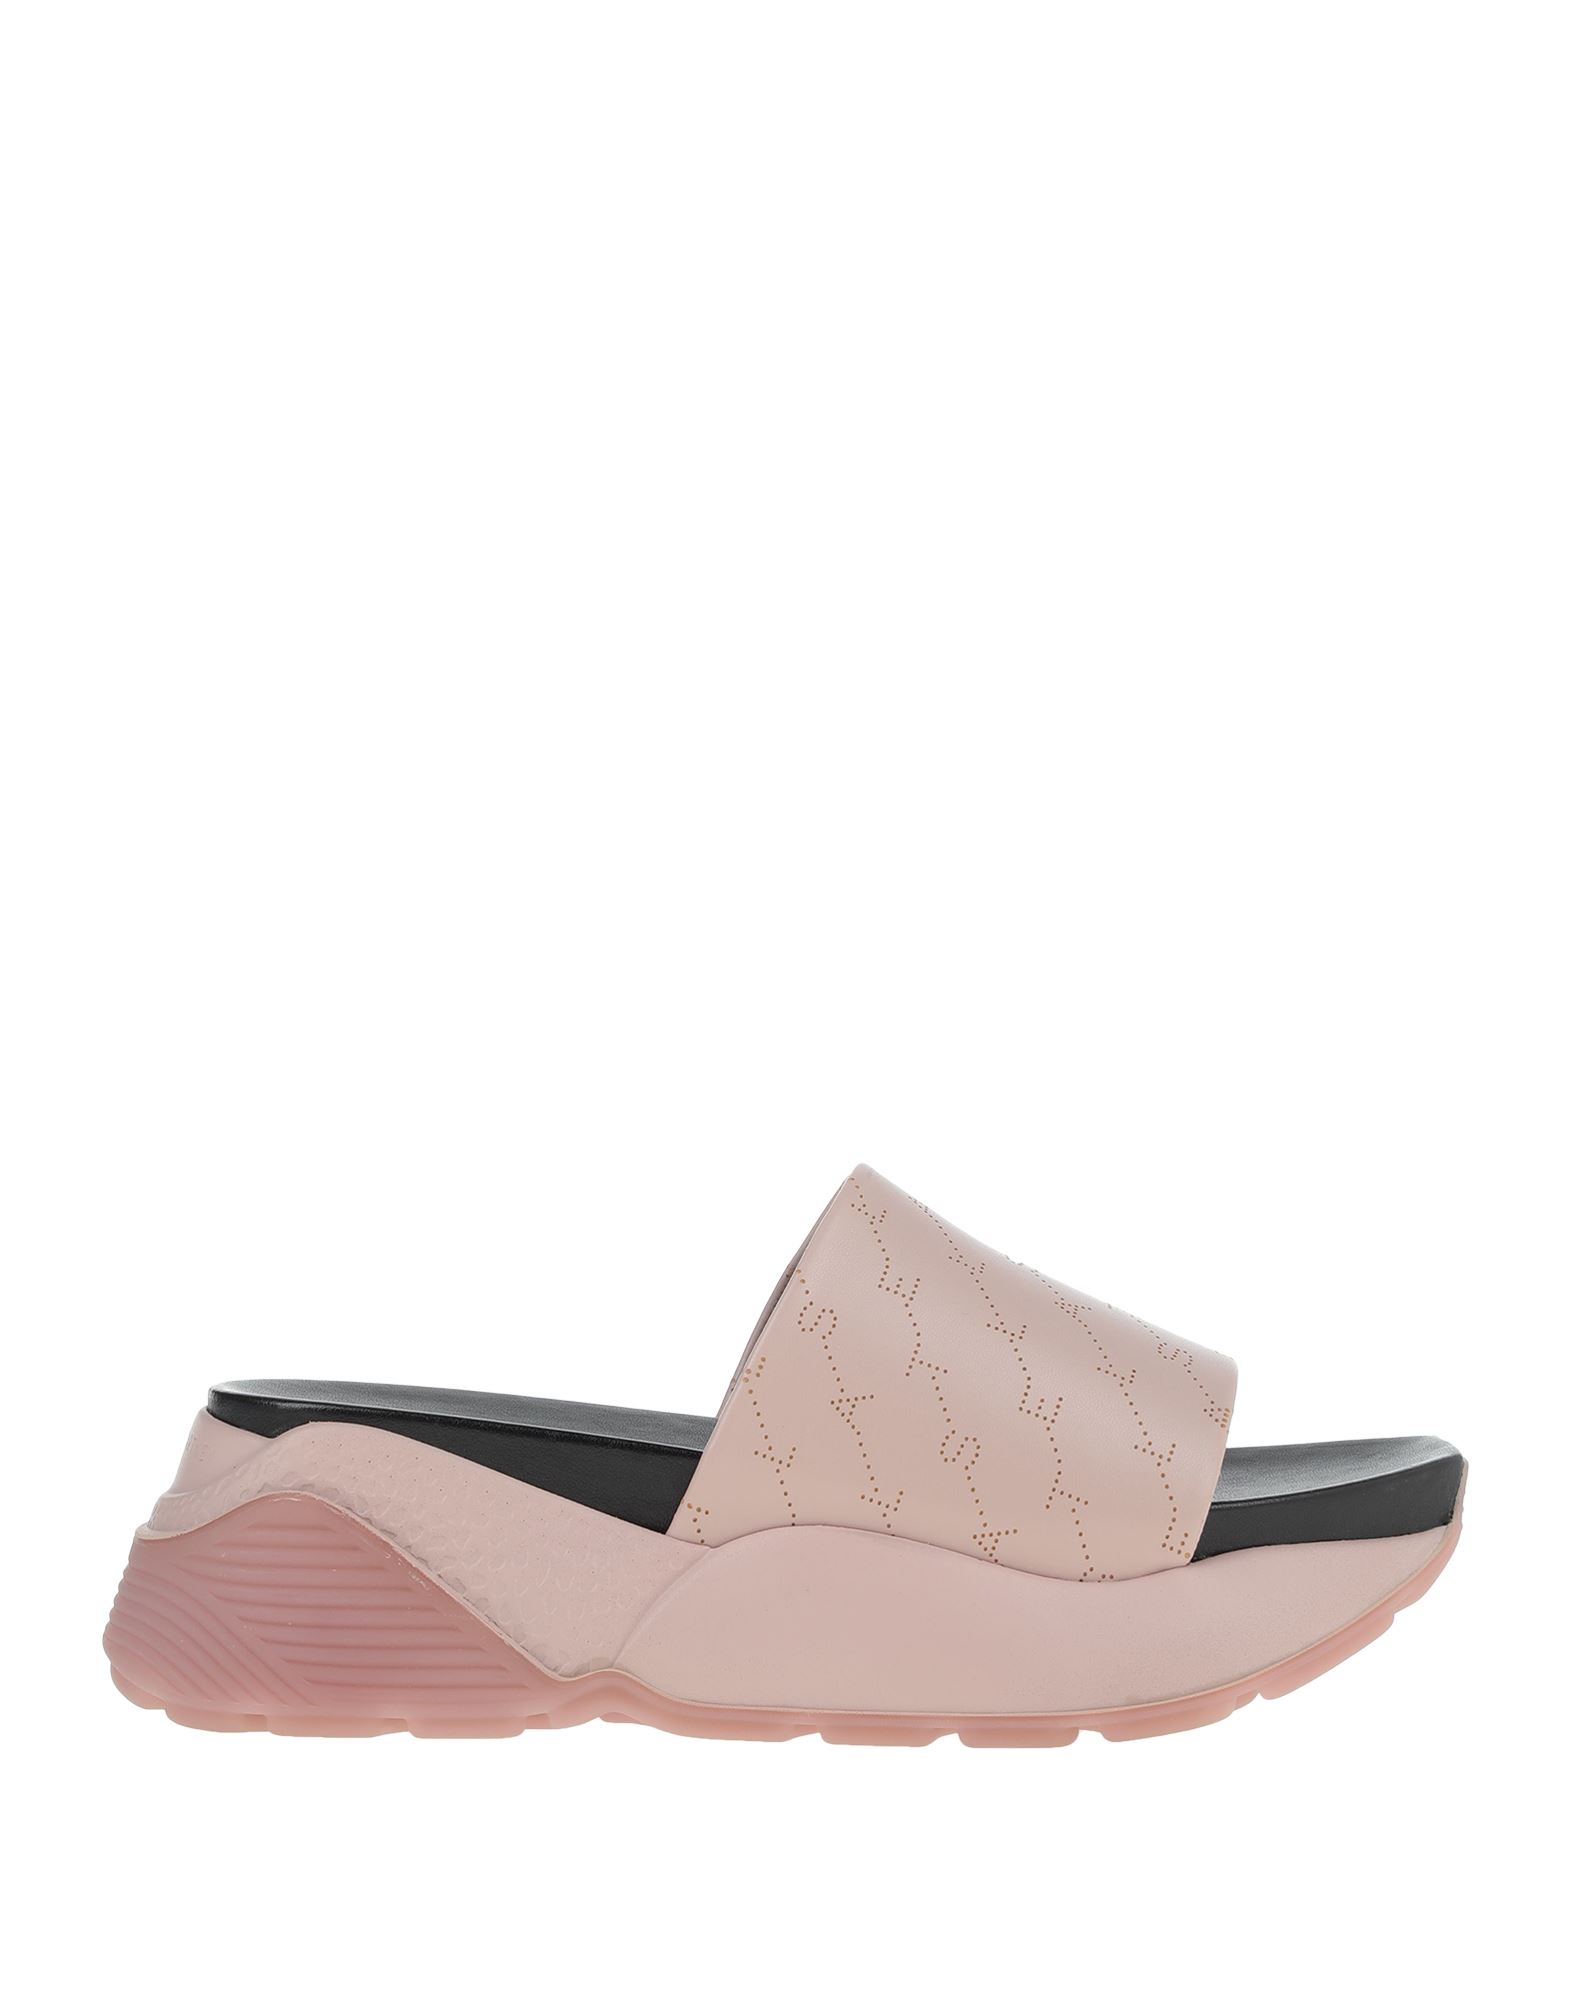 Stella Mccartney Sandals In Pink